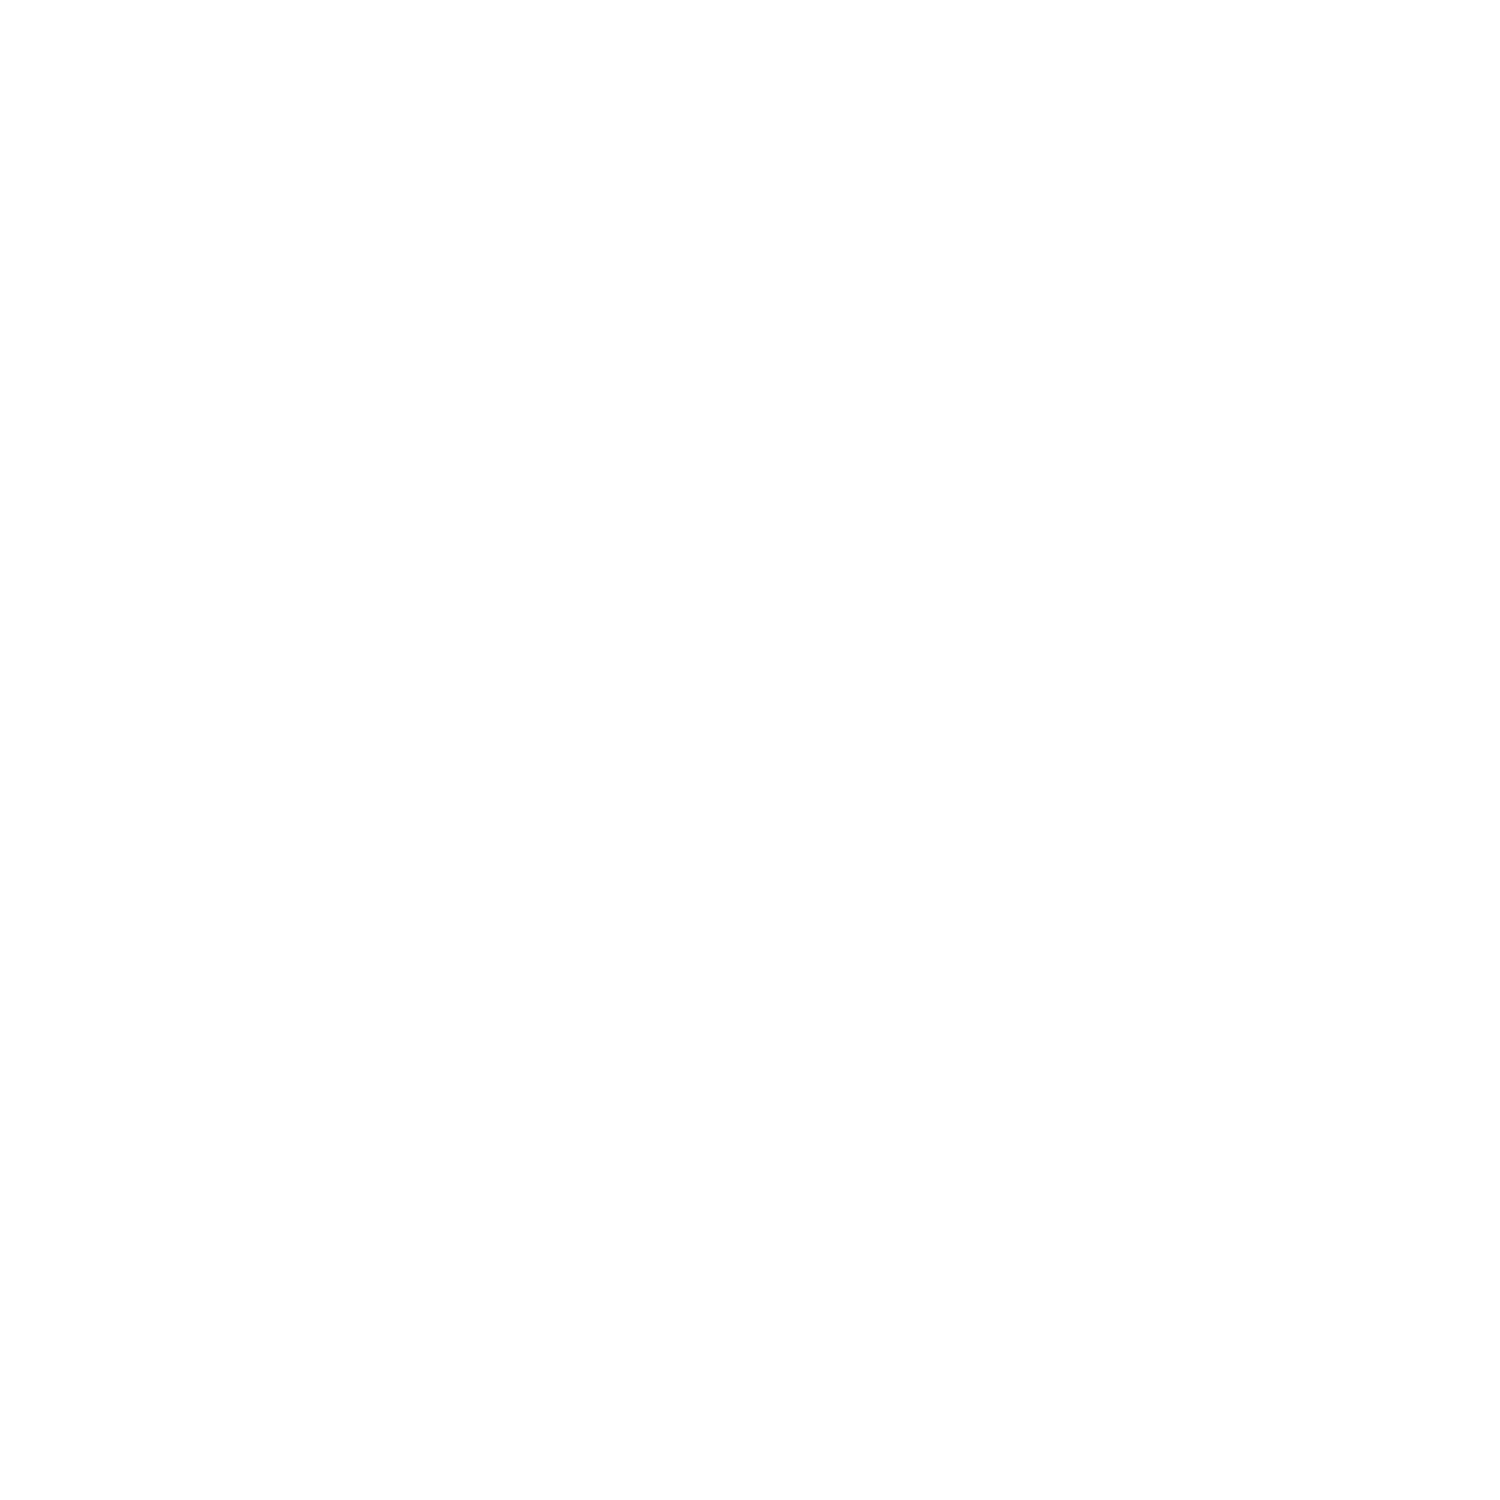  Michael Vos Music